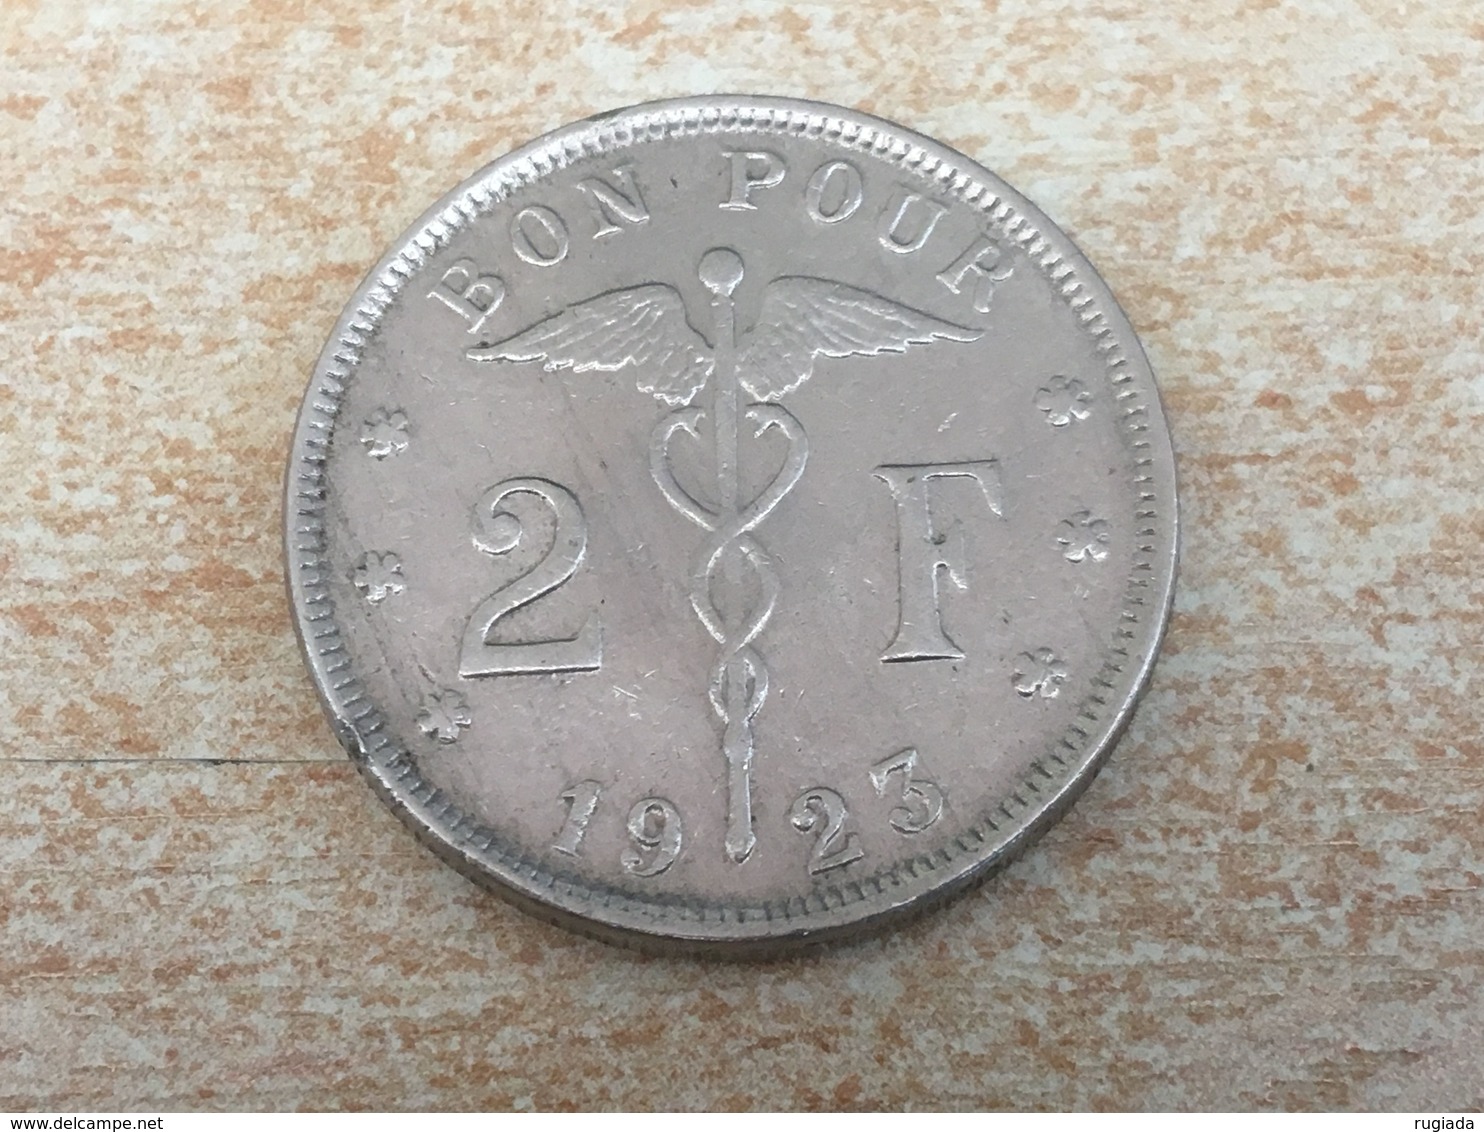 1923 Belgium 2 Francs Rare 'Belgique' Coin Ex Fine - 2 Francs